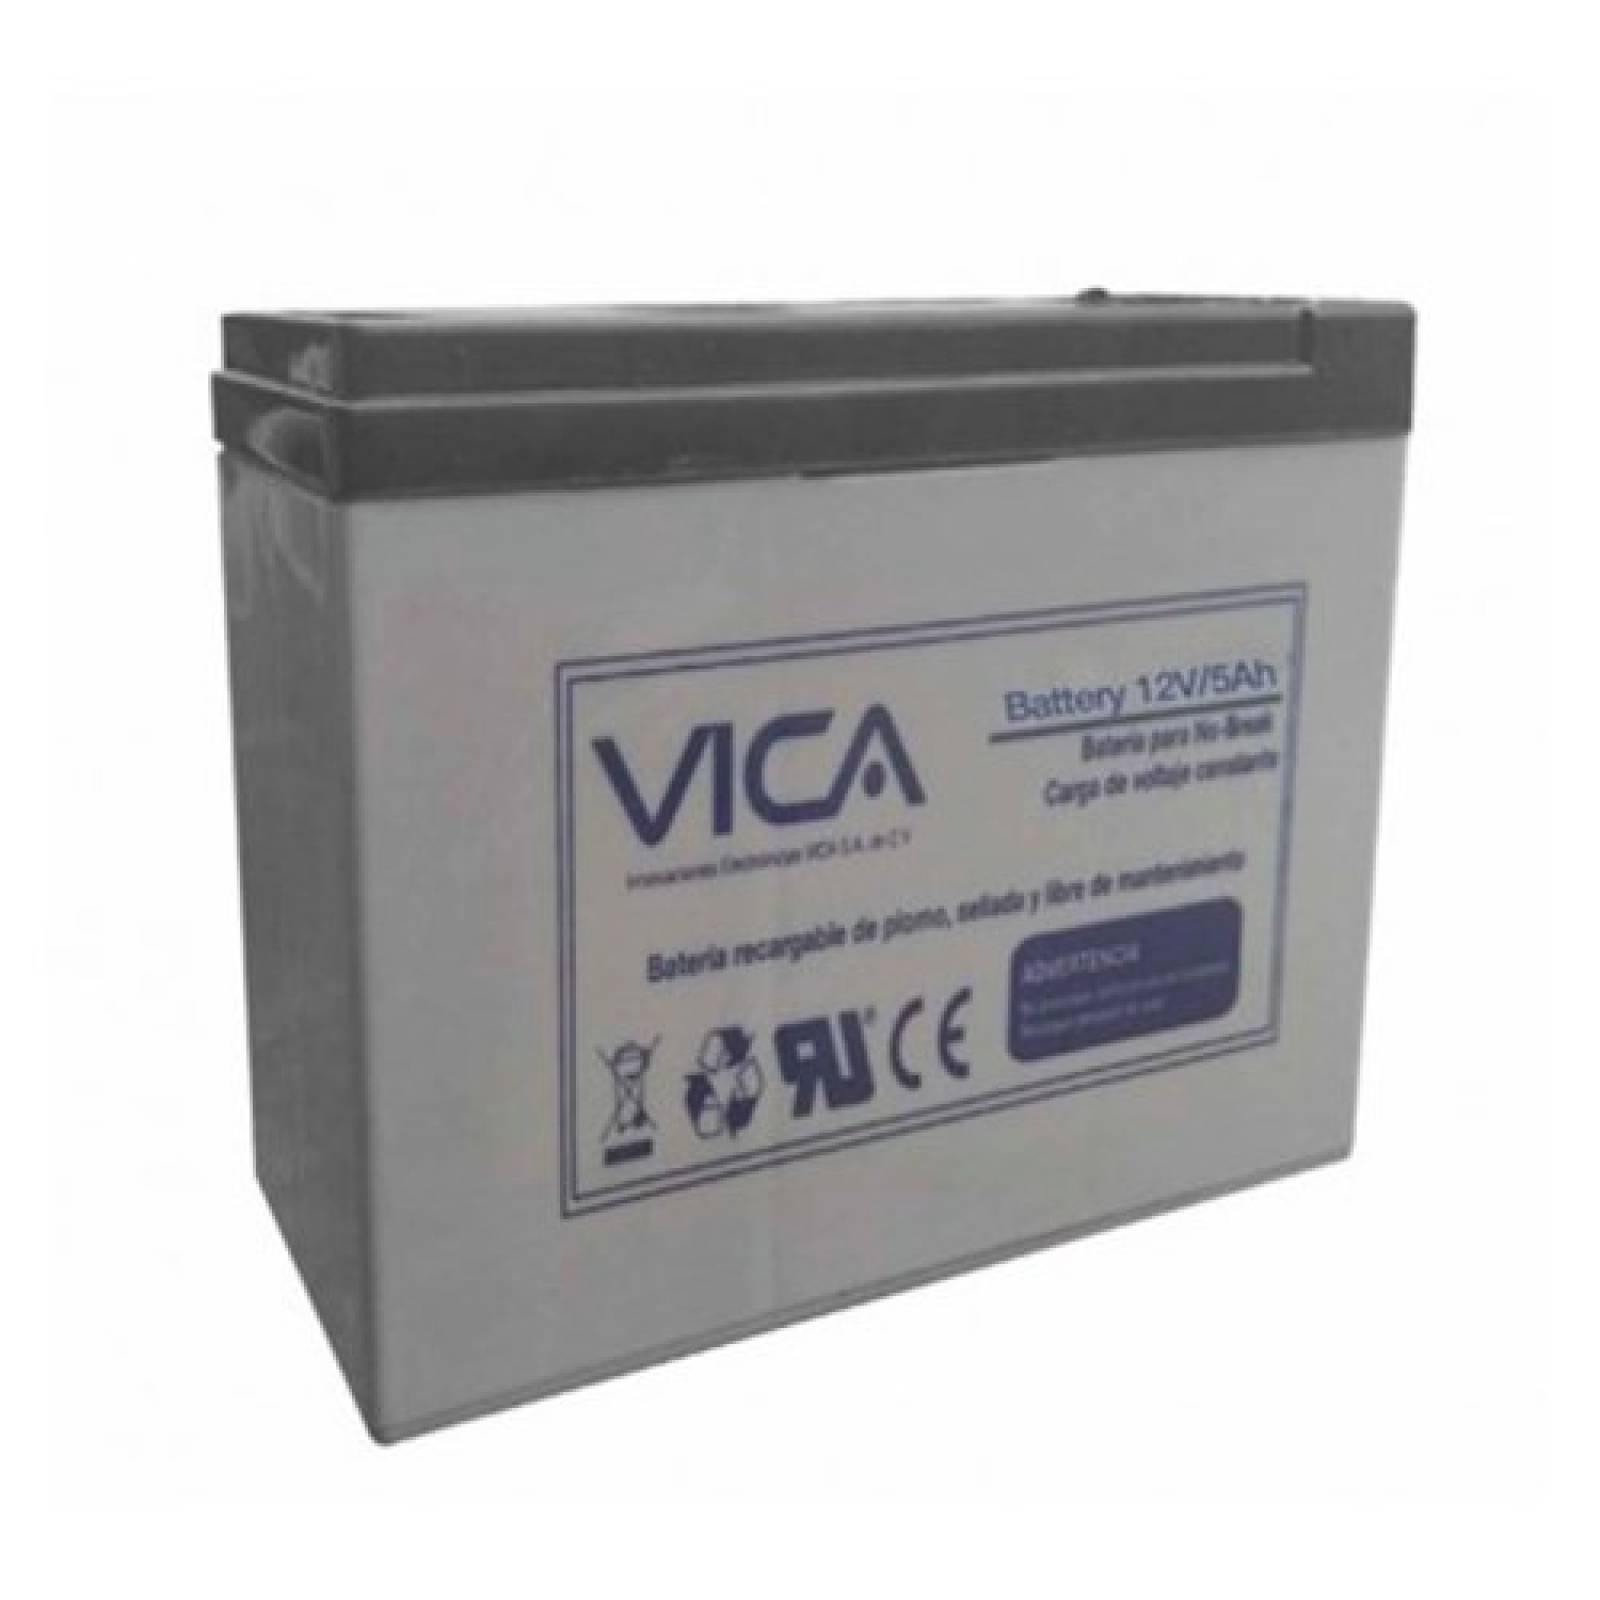 Bateria Reemplazo Recarga Voltaje 12 V - 4.5A Vica